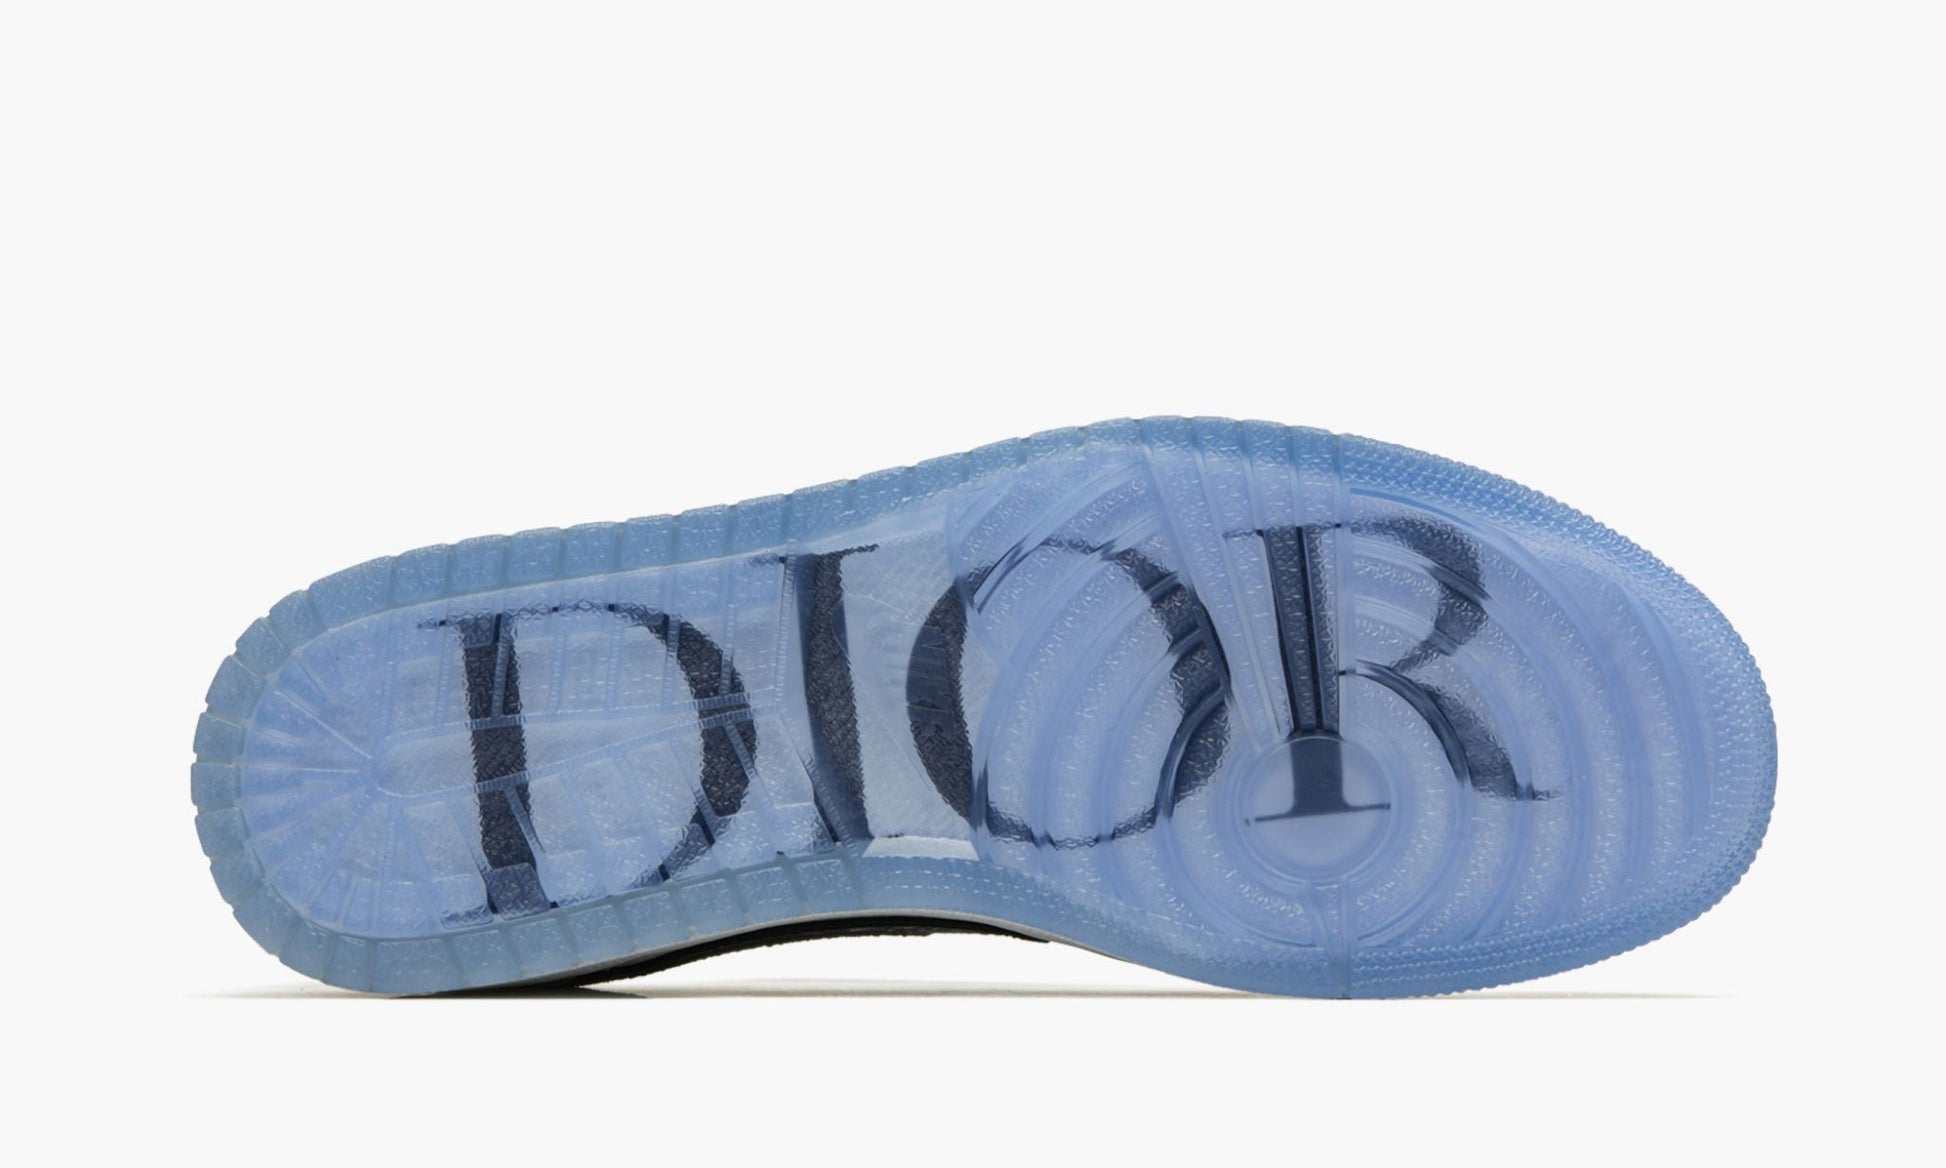 Air Jordan 1 Low "Dior"